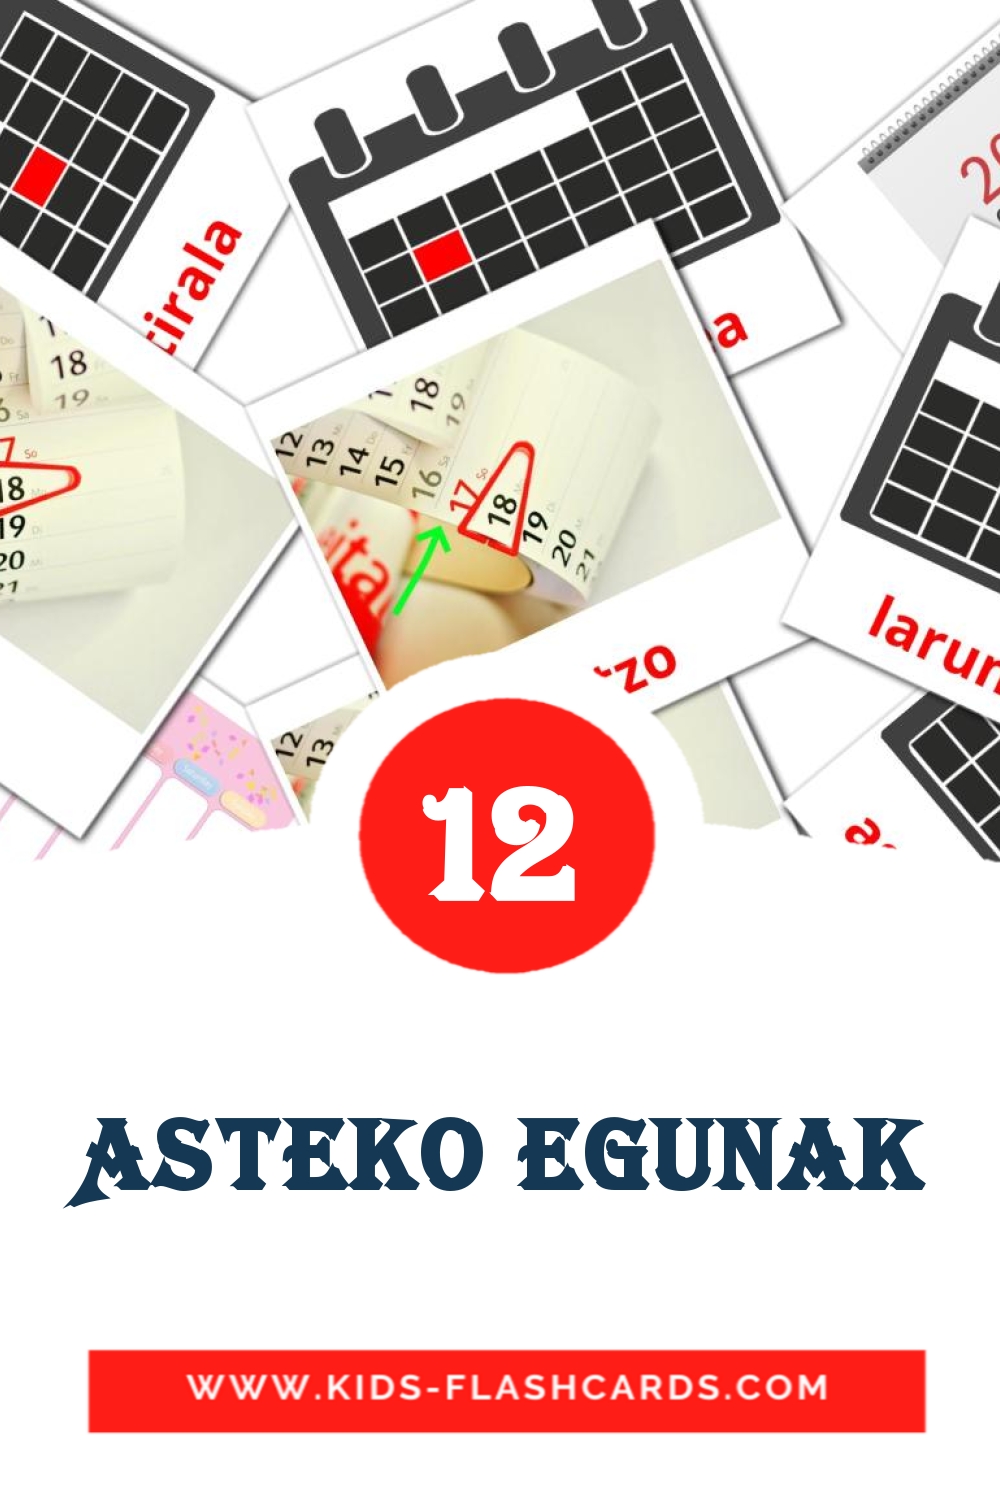 12 Asteko egunak fotokaarten voor kleuters in het baskisch